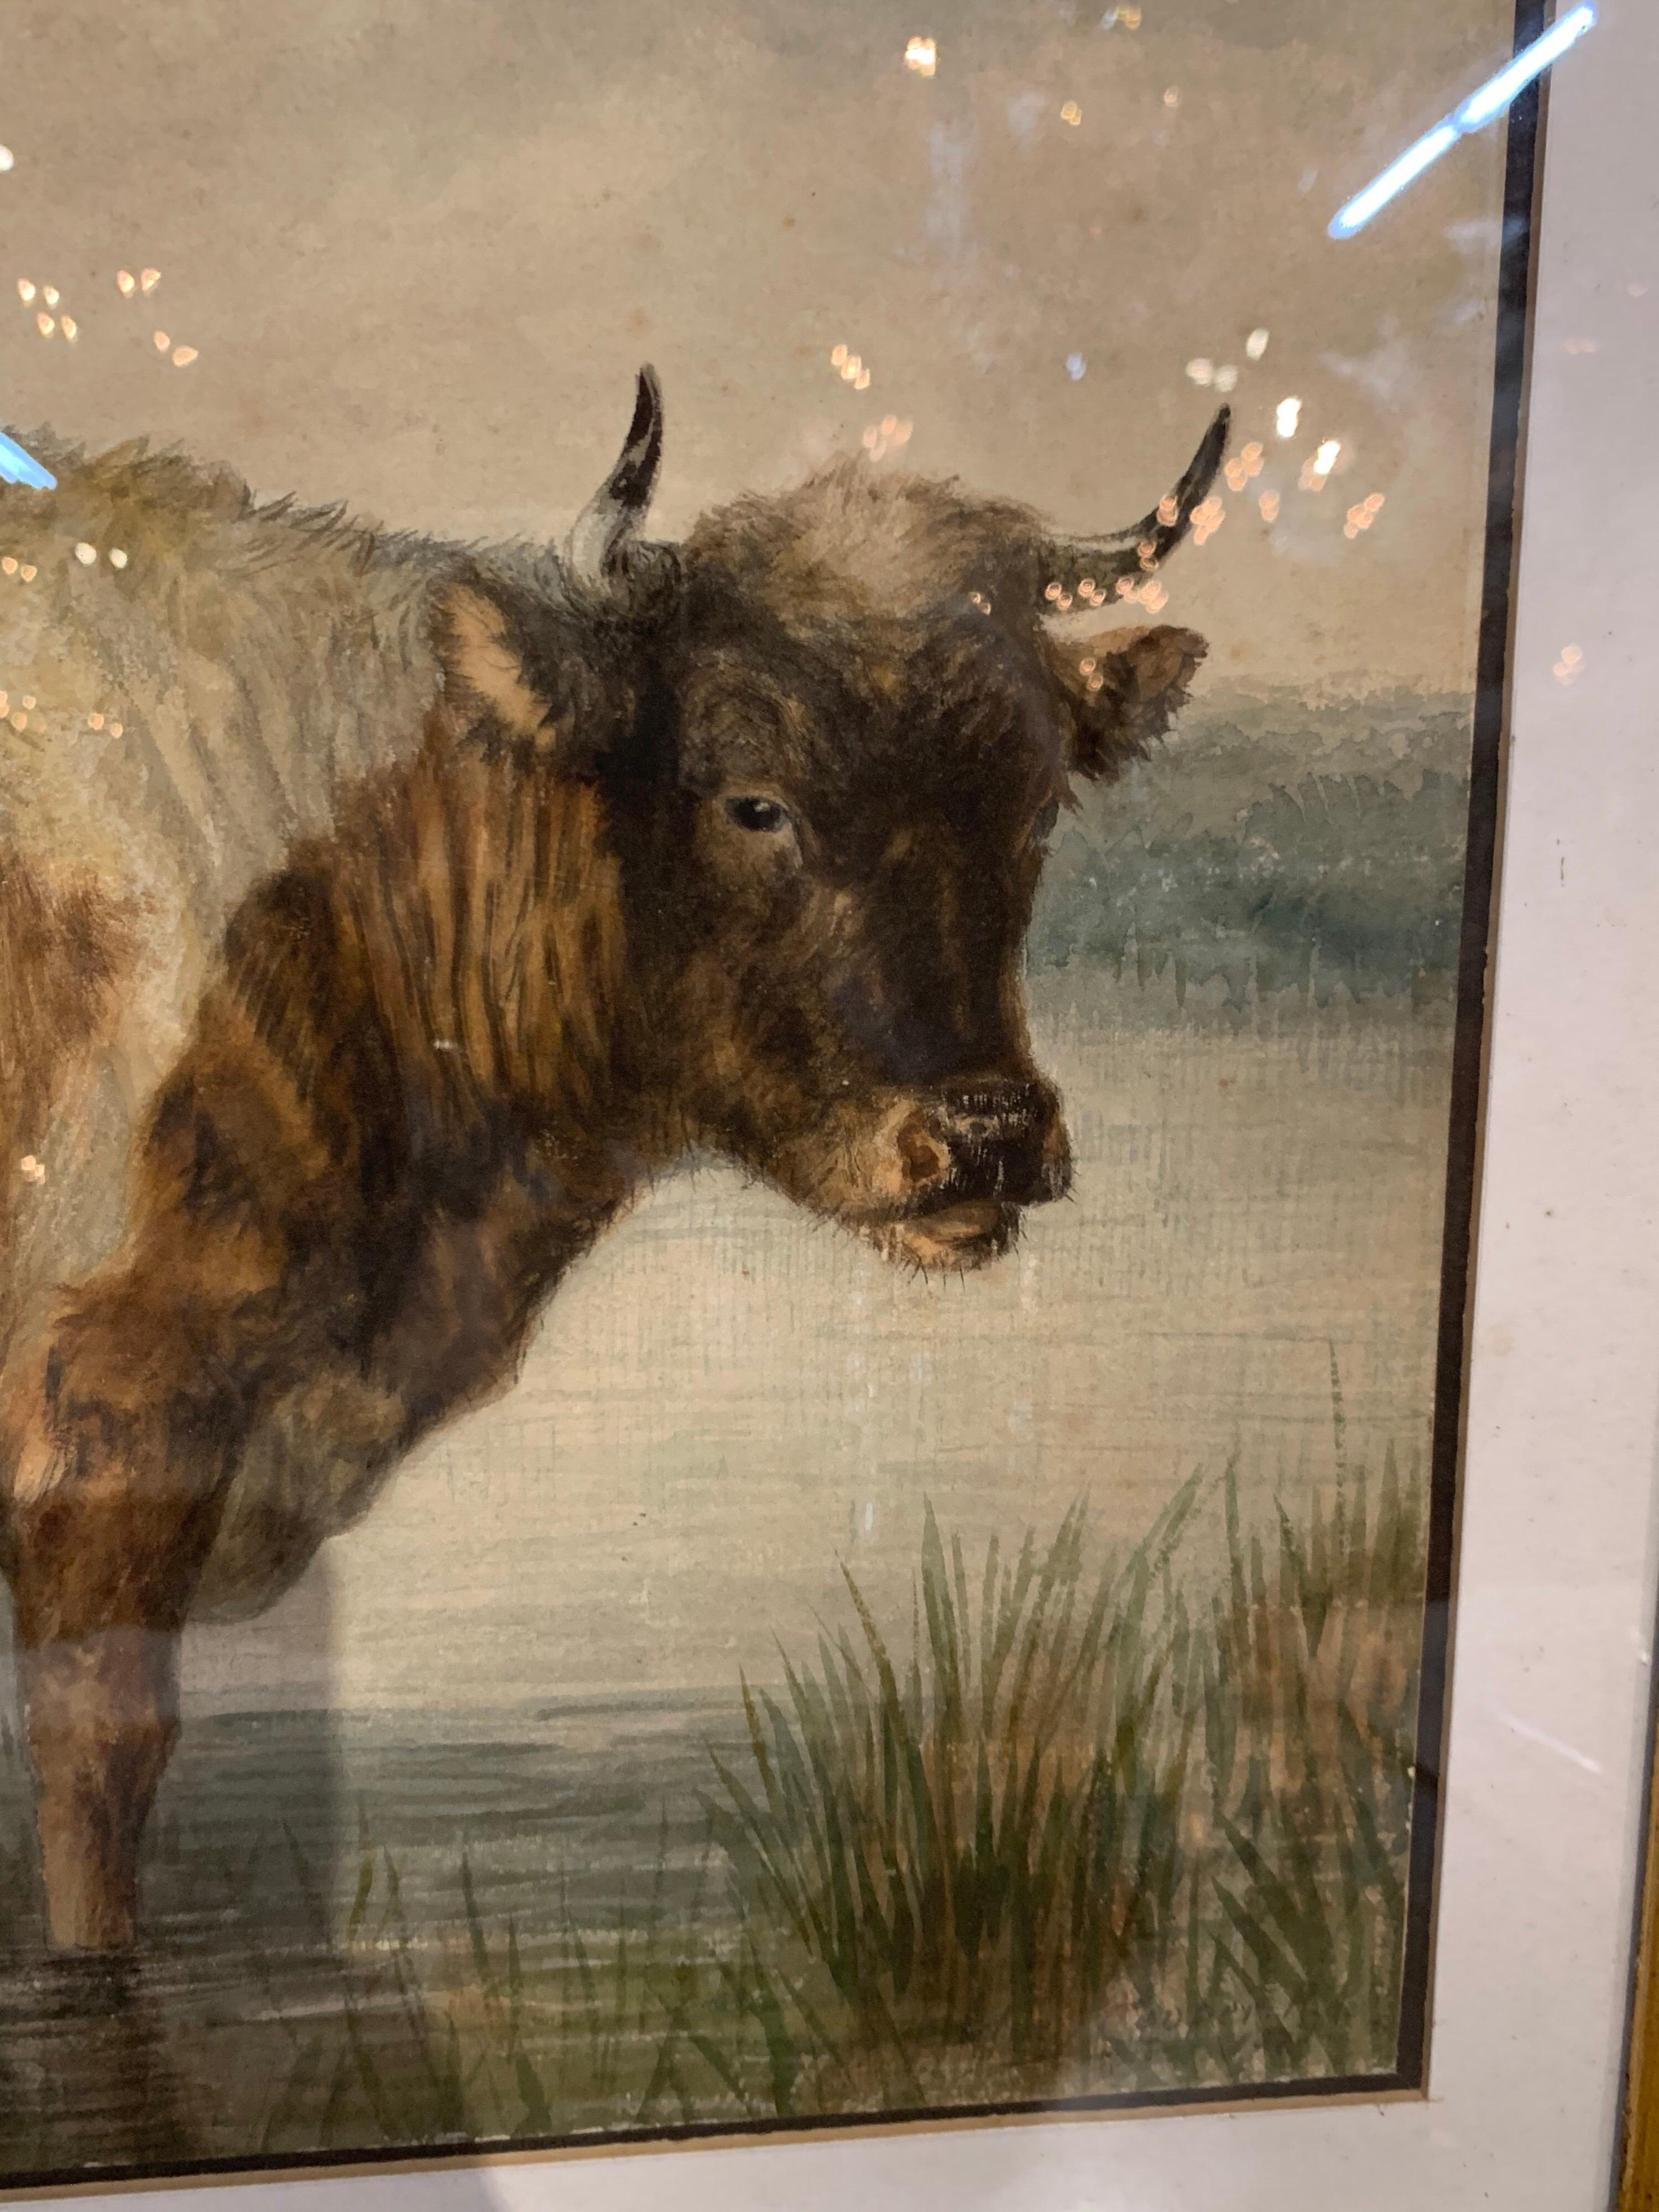 Belle aquarelle anglaise du 19ème siècle par Thomas S. Cooper dans un beau cadre doré. La scène représente deux vaches dans un environnement rural. Des détails incroyables dans cette peinture. Une très belle œuvre d'art !